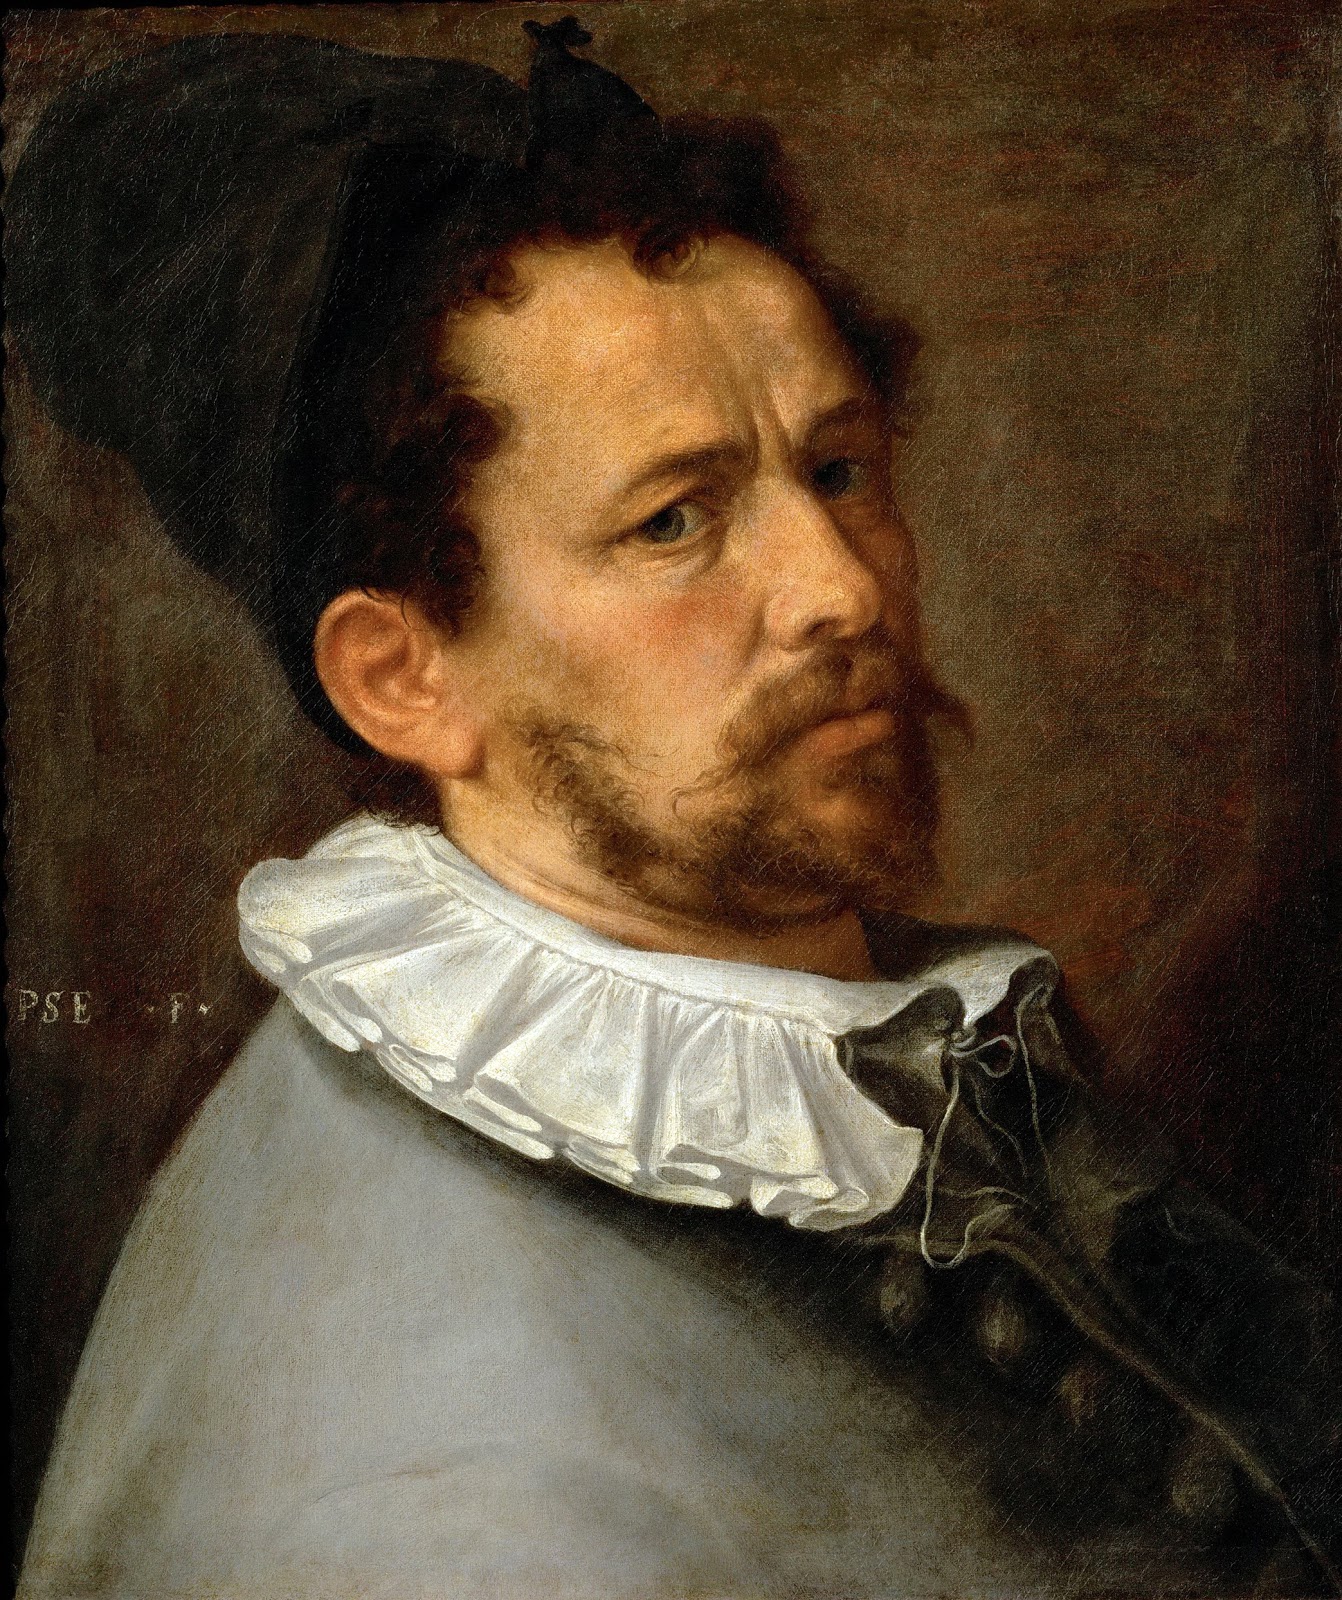 Bartholomaeus+Spranger-1546-1611 (8).jpg